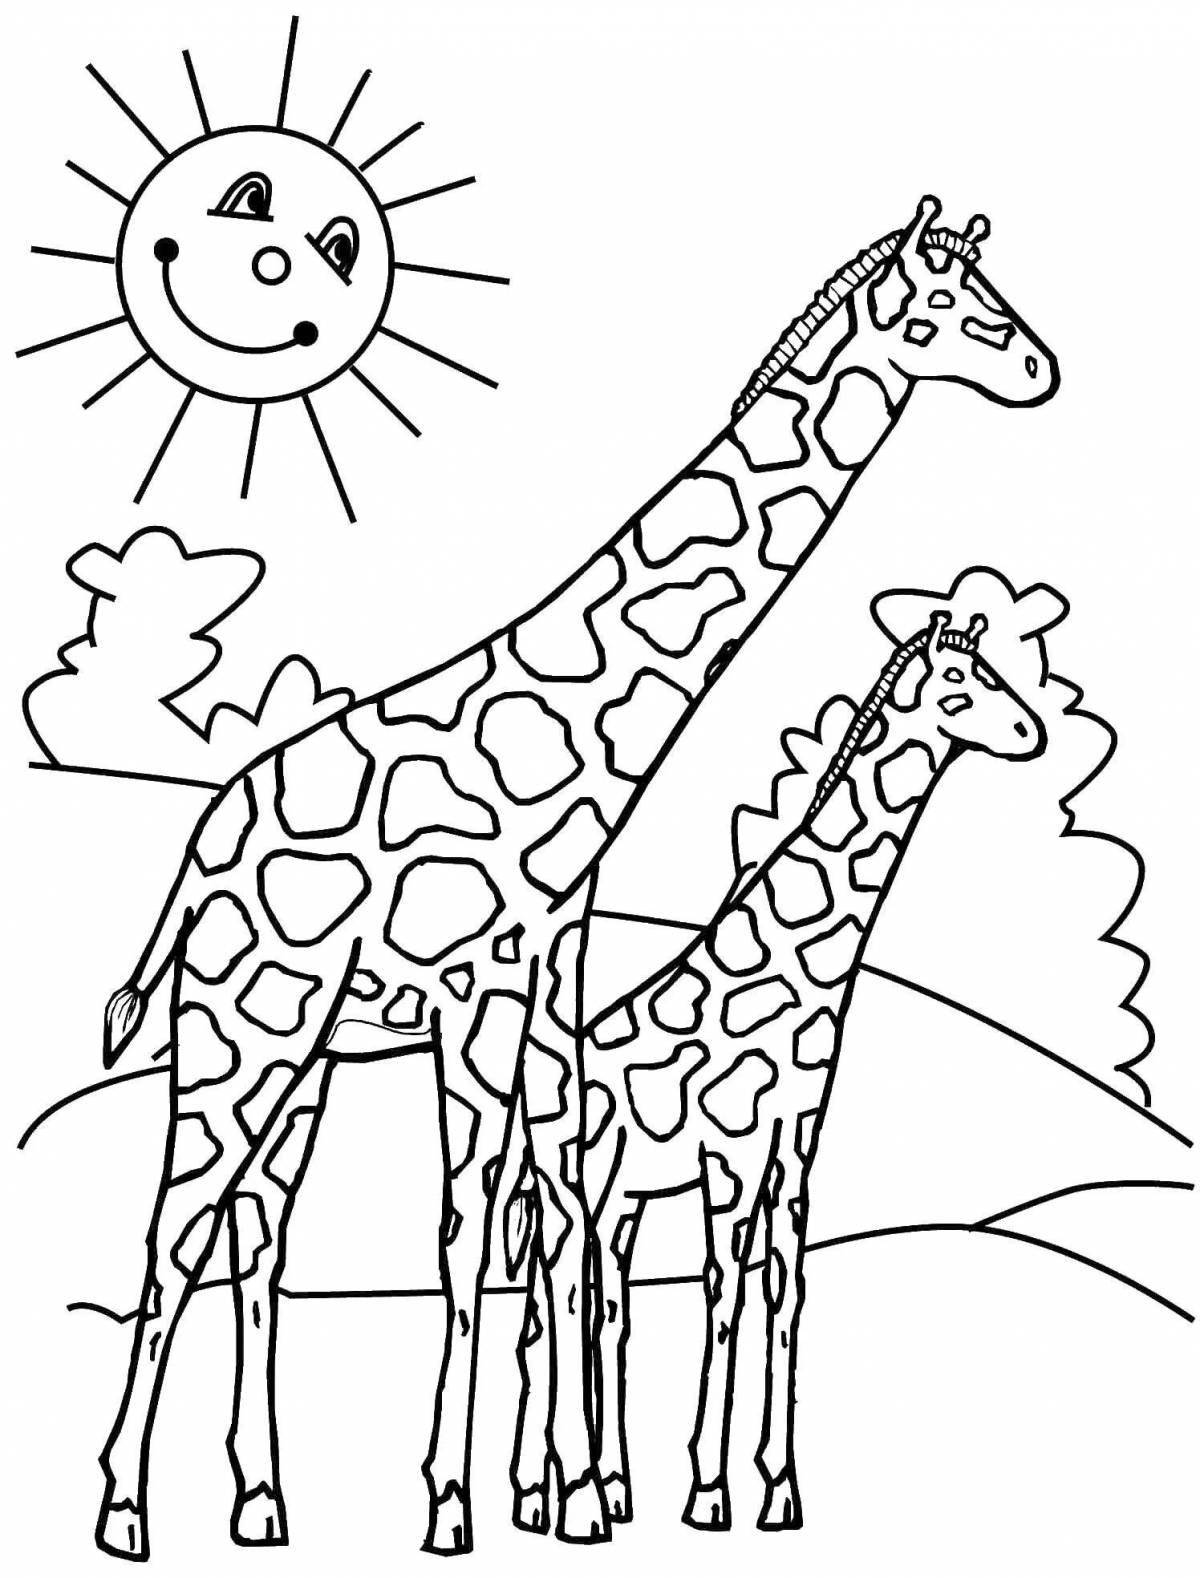 Веселая раскраска африканских животных для детей 4-5 лет